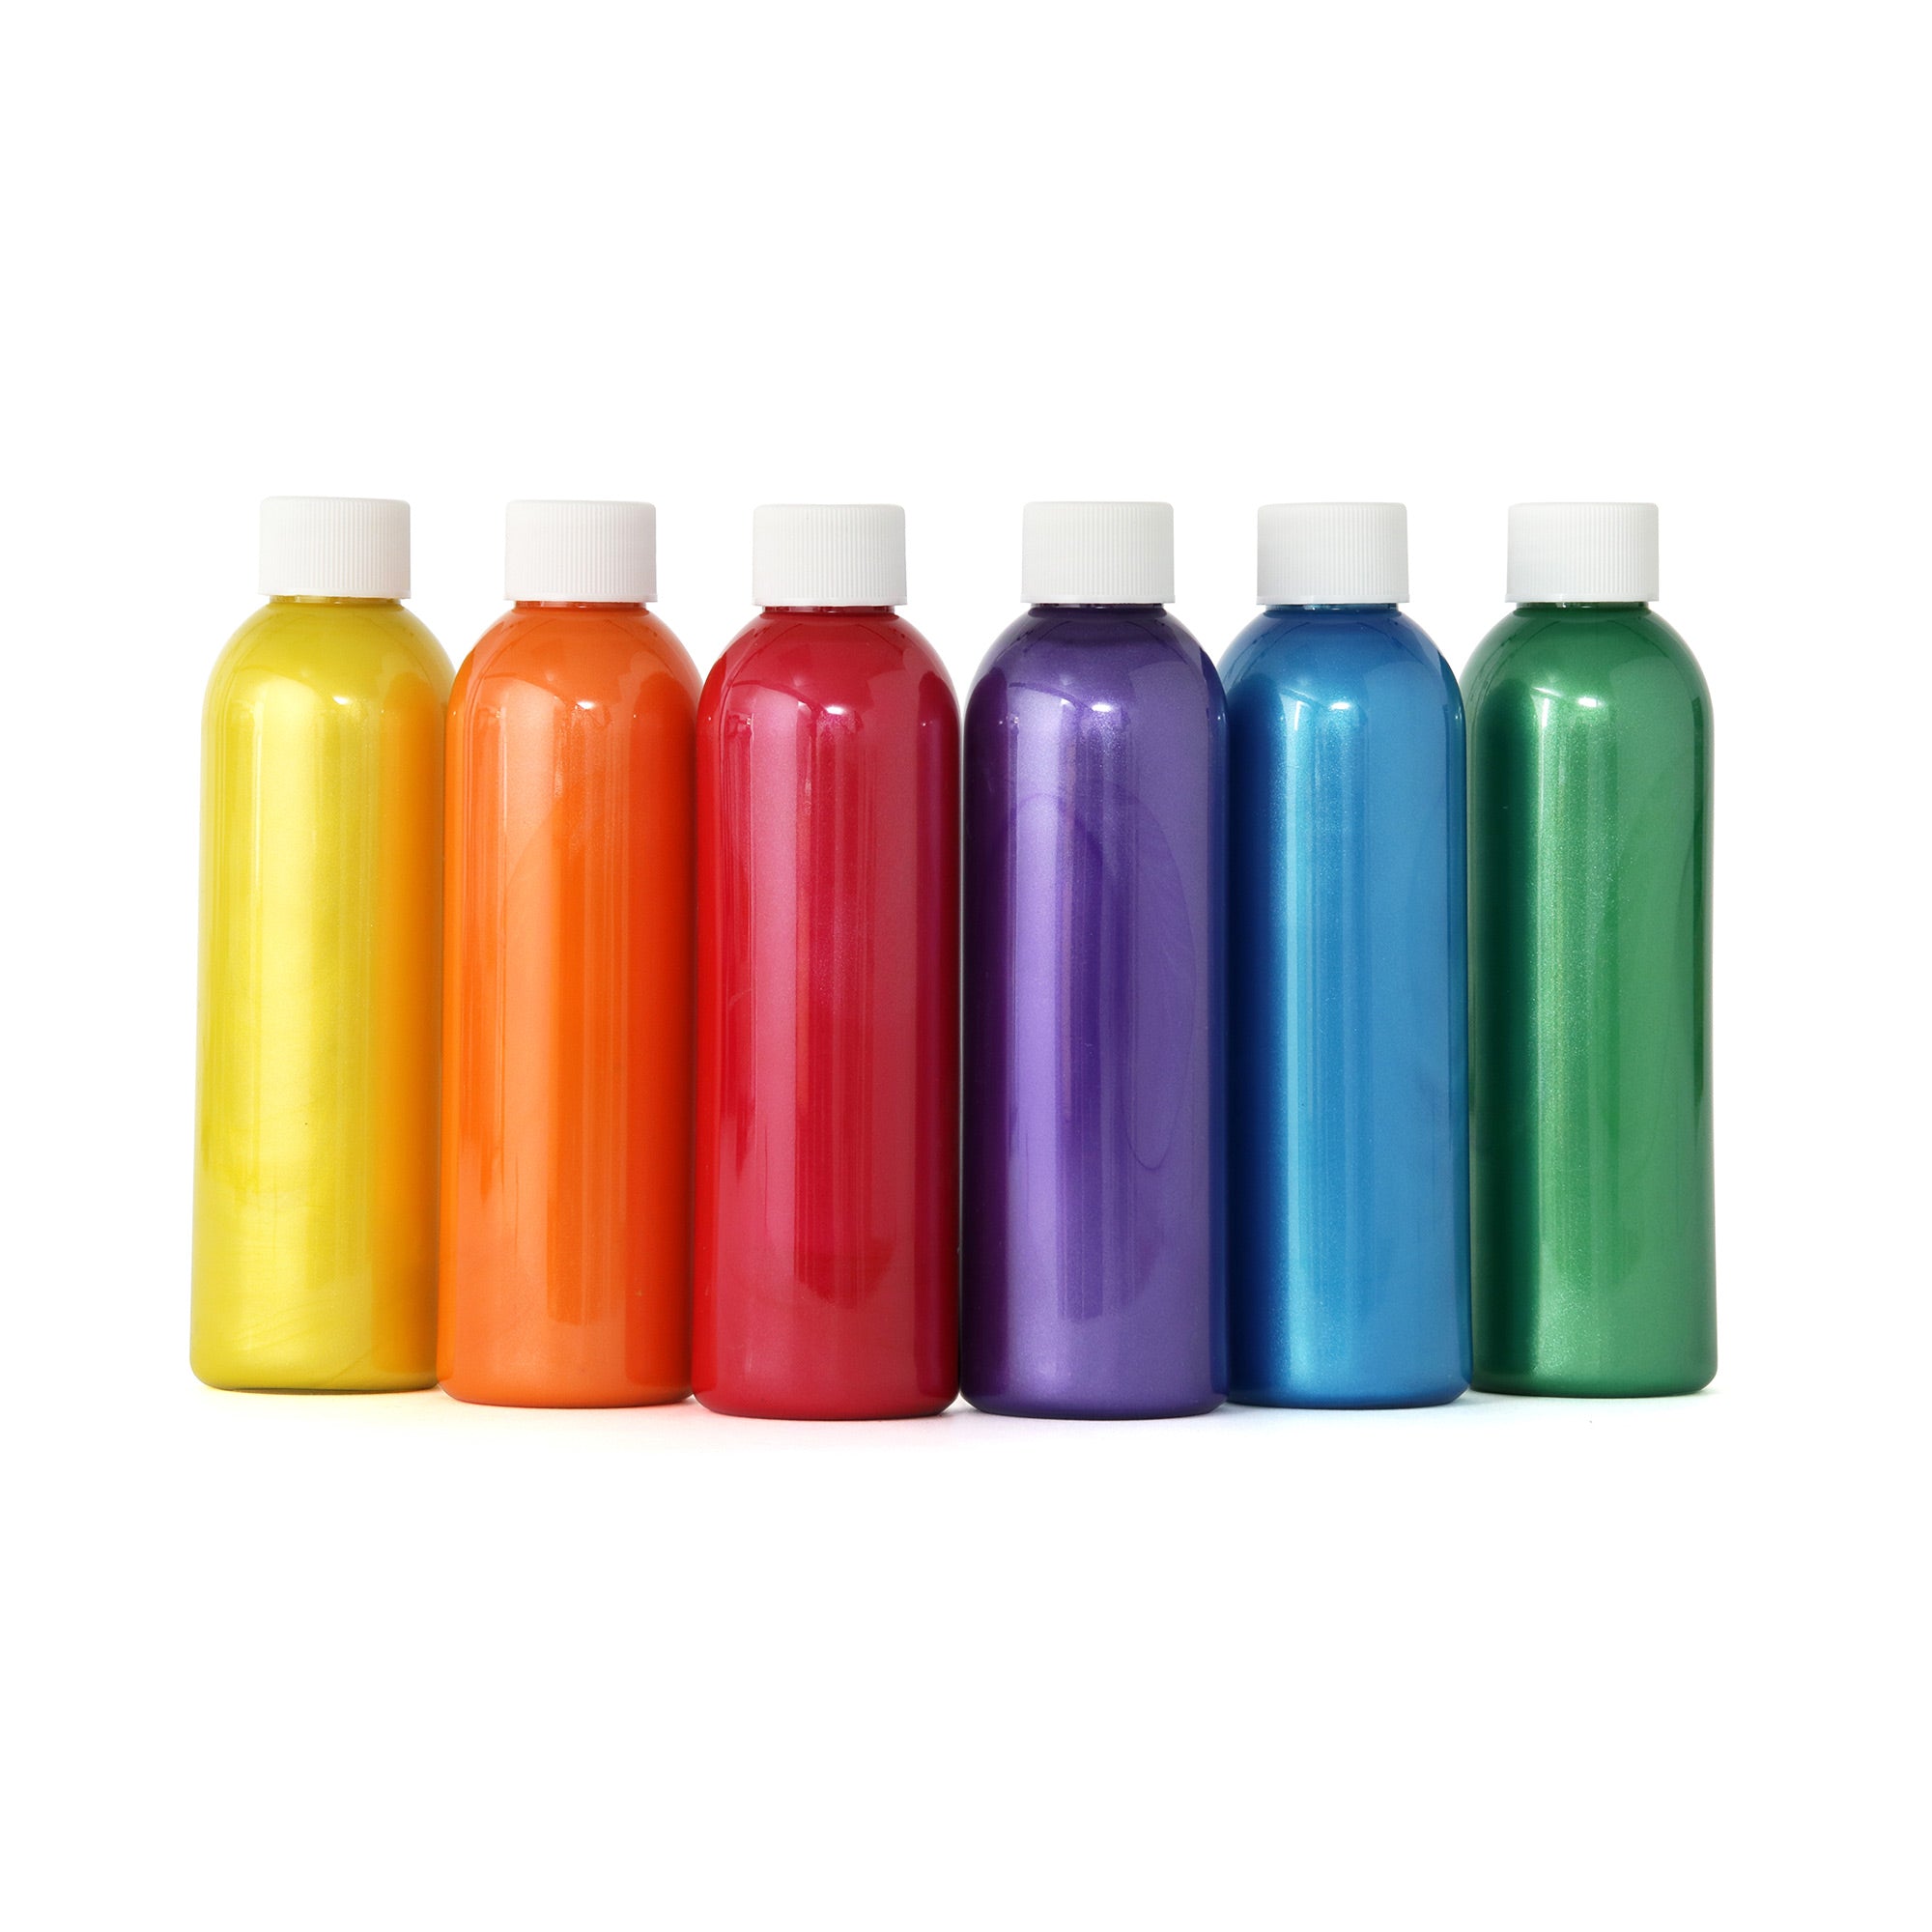 Peinture lavable Crayola - 250 ml - 6 pcs - Gouache liquide enfant - Creavea